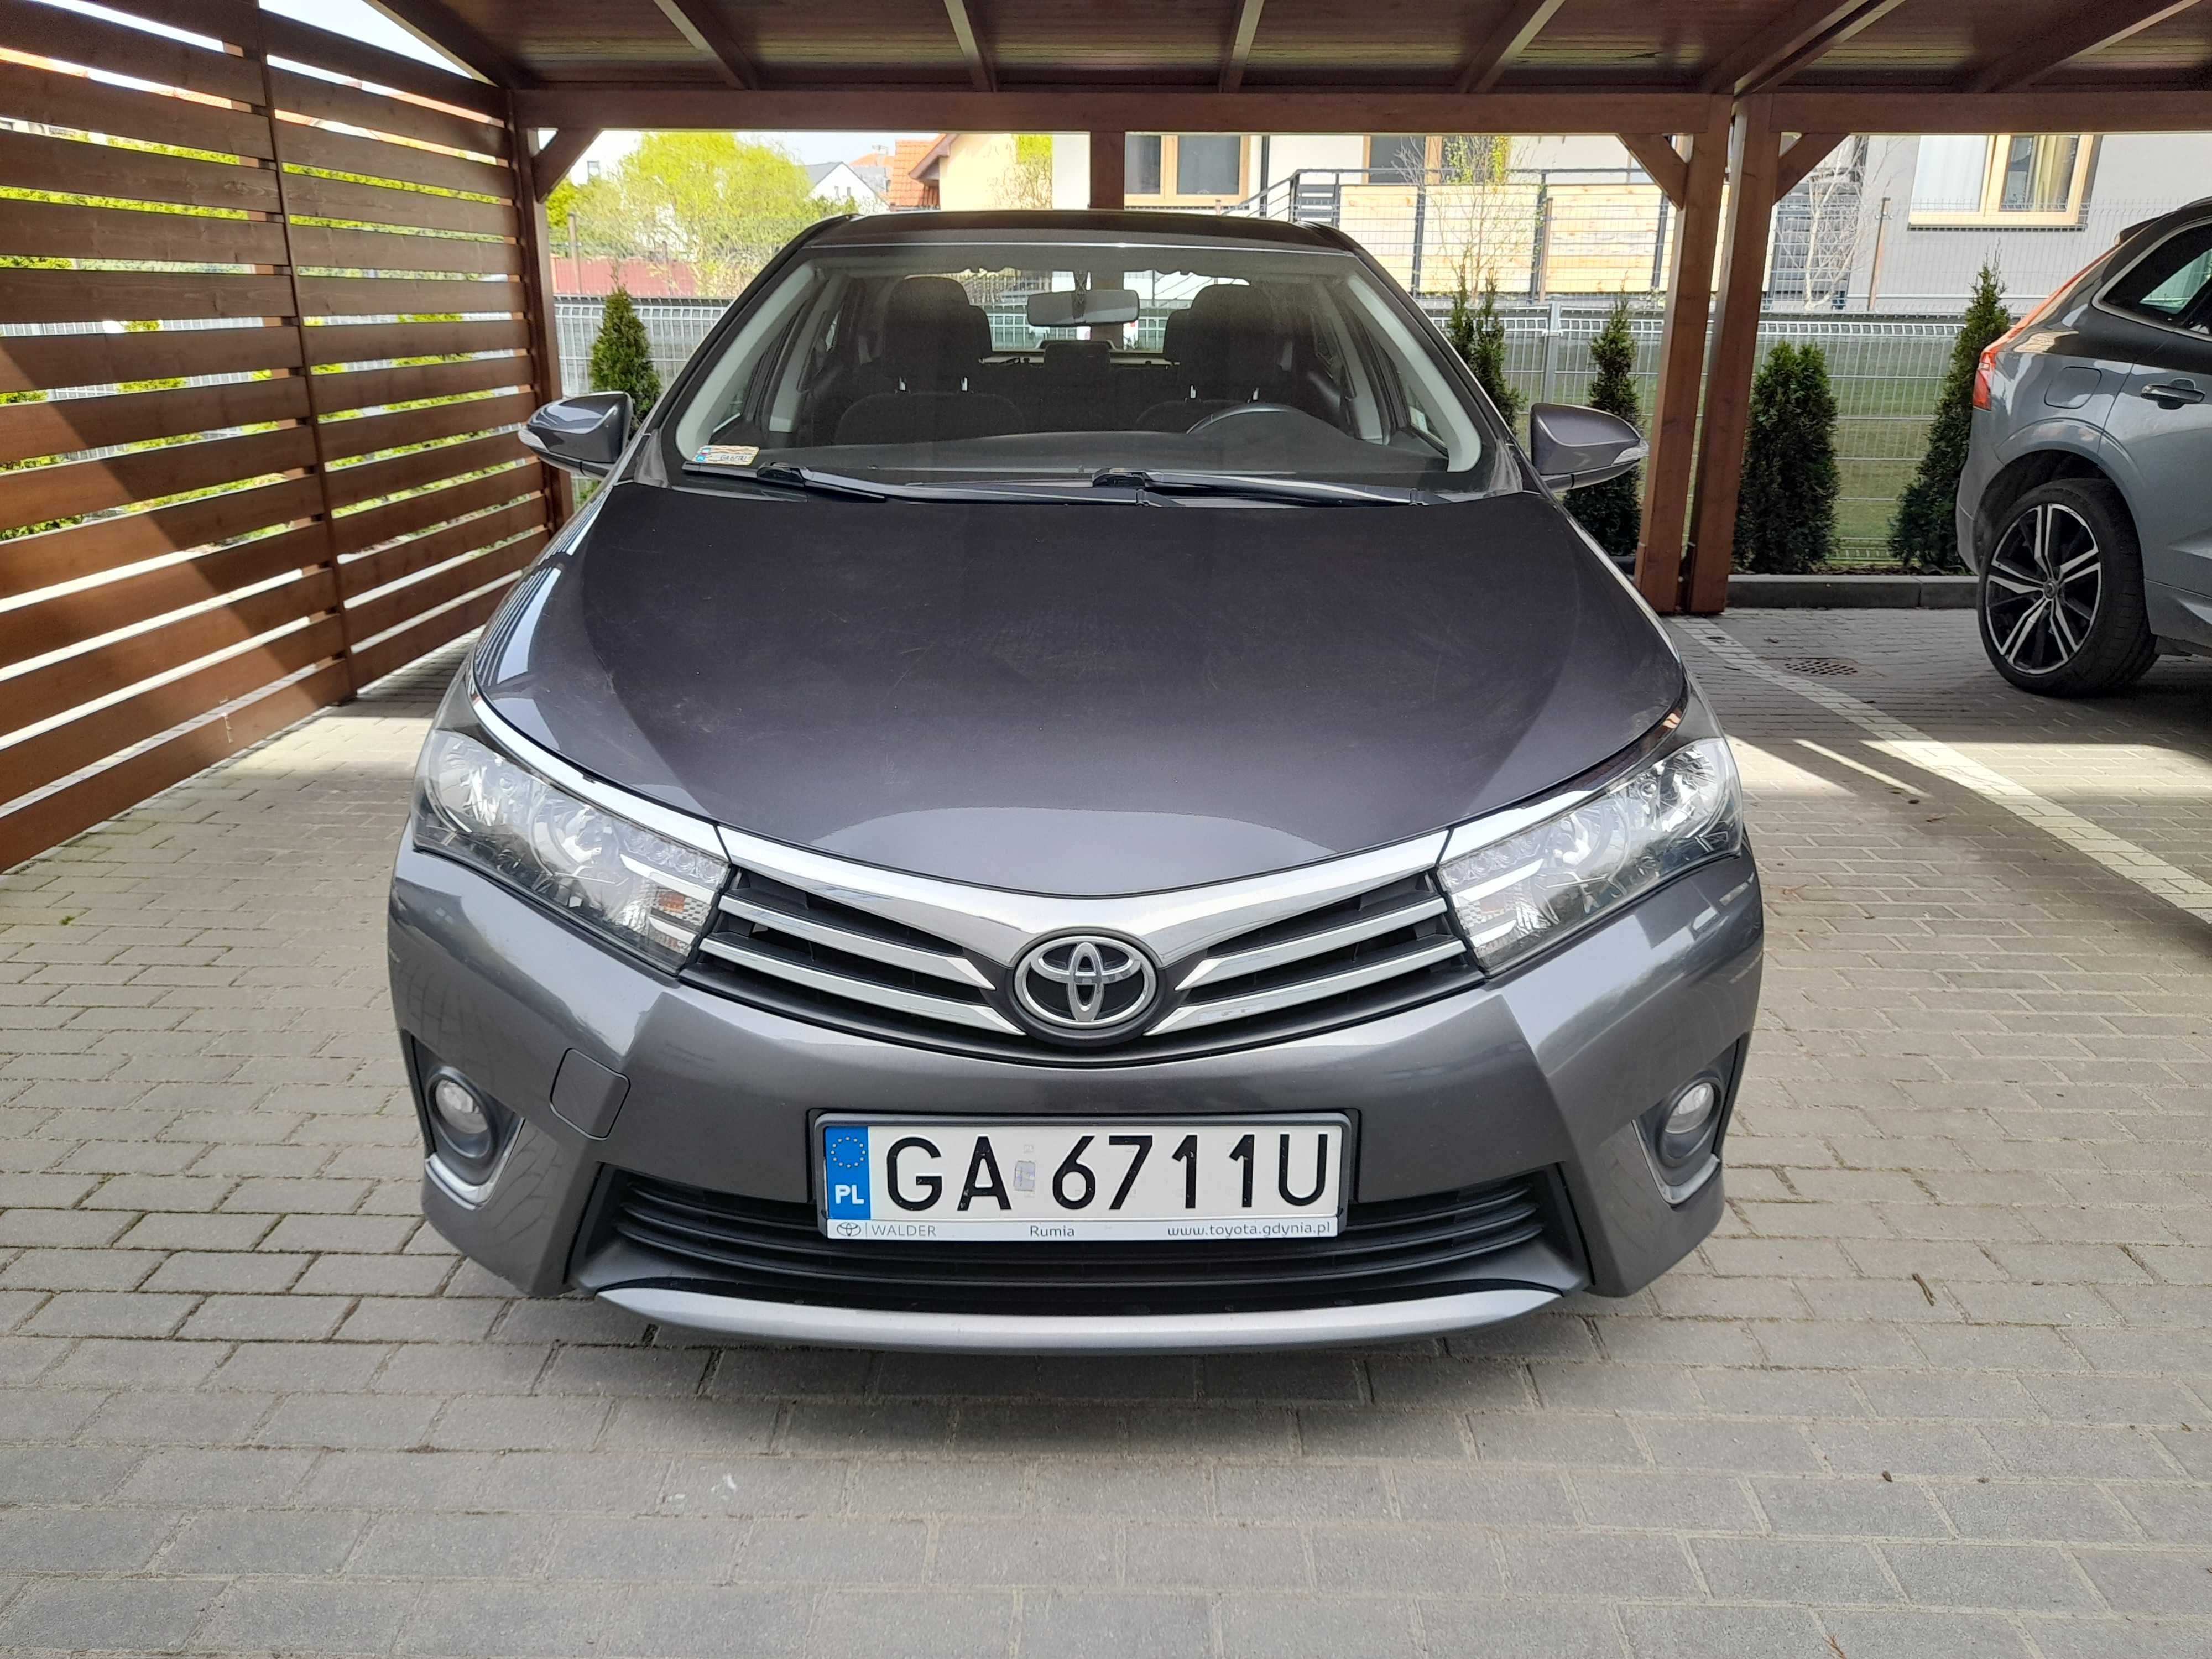 Toyota Corolla Sedan 2014 - drugi właściciel